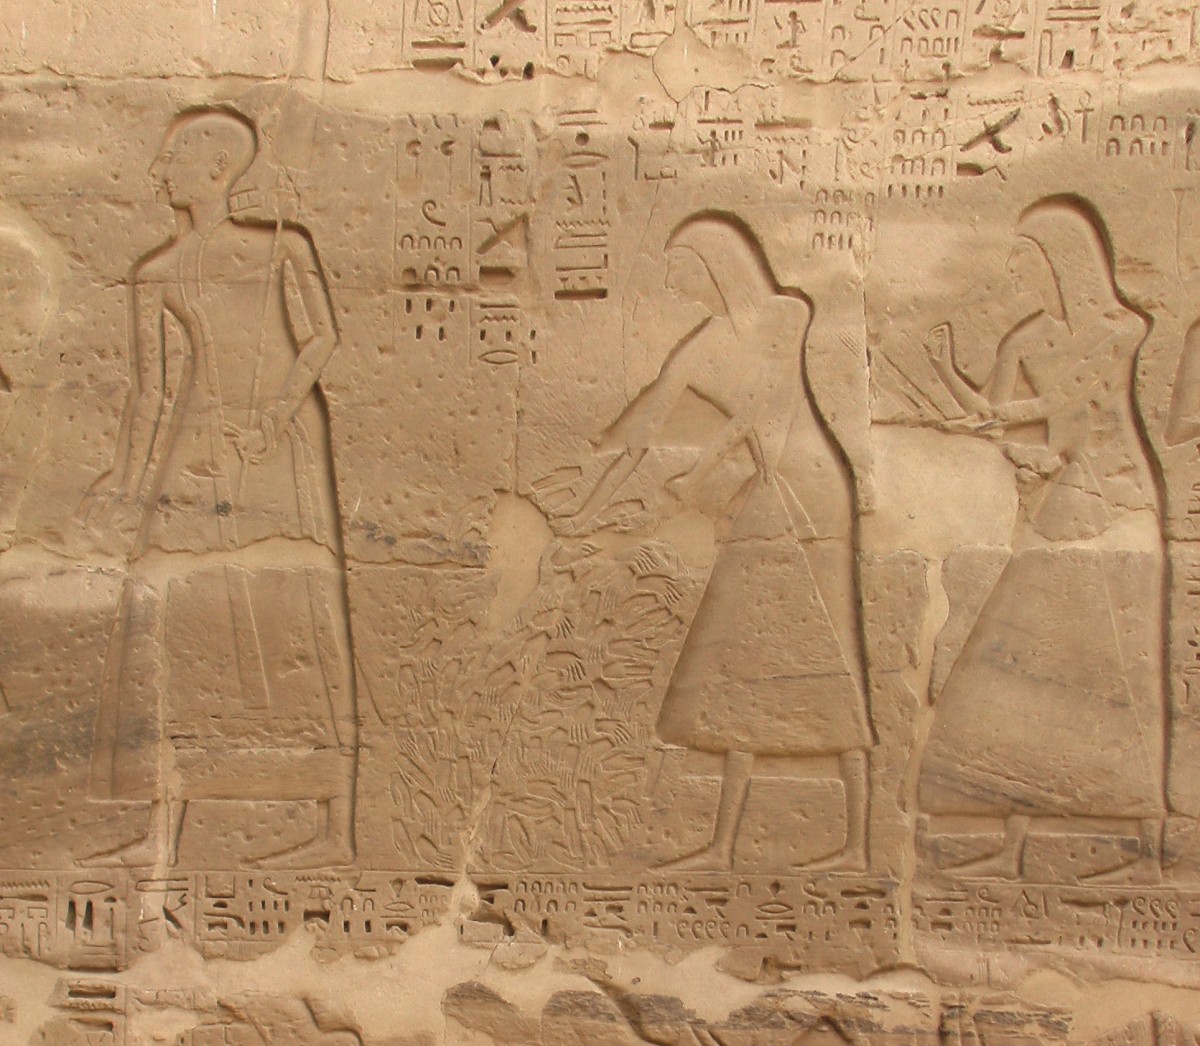 Καταμέτρηση κομμένων χεριών μετά από μάχη. Ανάγλυφο, Μεντίνετ Χάμπου, νεκρικός ναός Ραμσή Γ΄, 20η Δυναστεία.